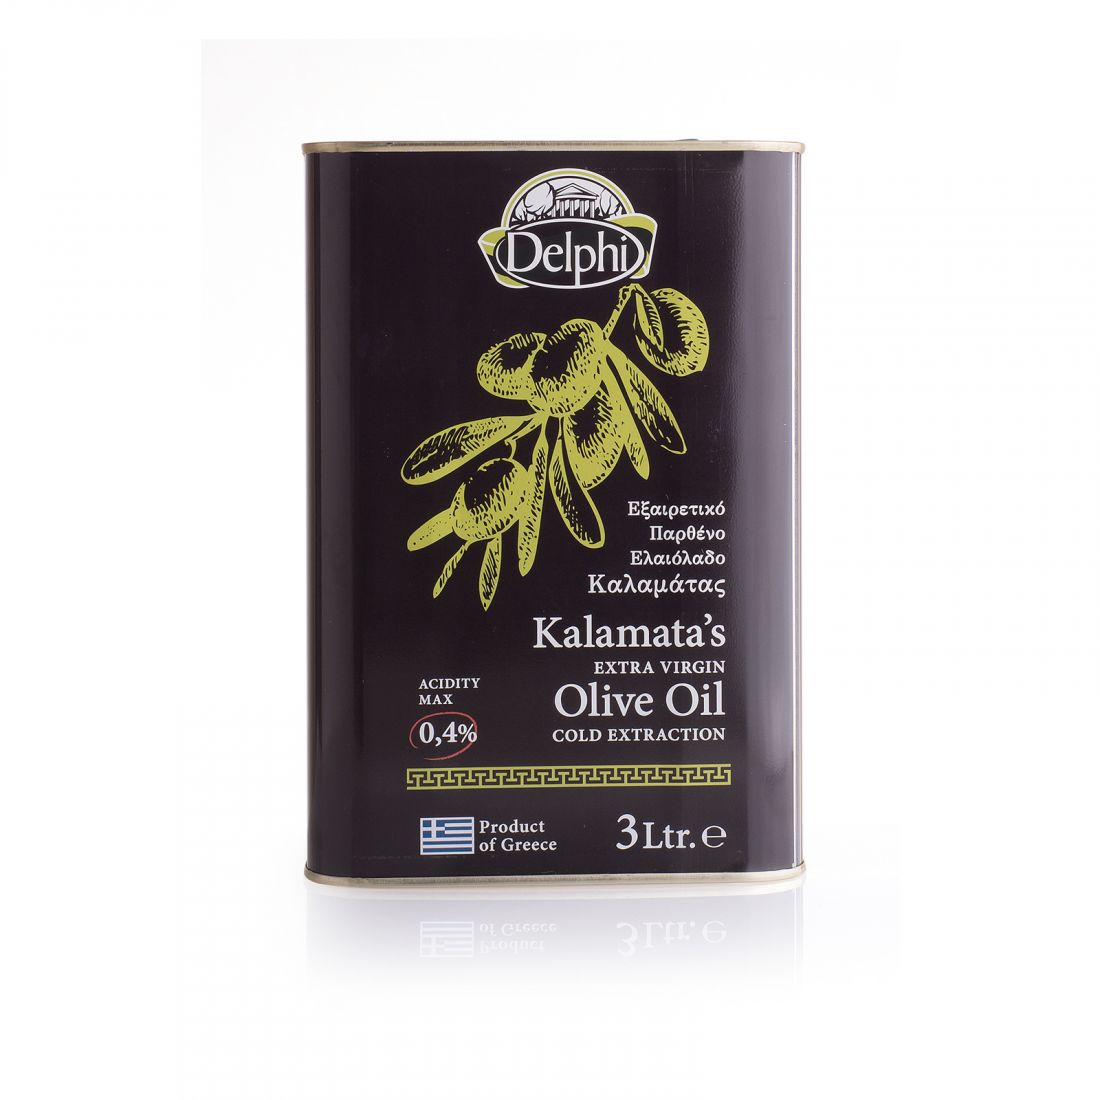 Оливковое масло Каламата DELPHI  - 3 литра прямого отжима из оливок, салатное греческое масло низкой кислотности, жестяная банка